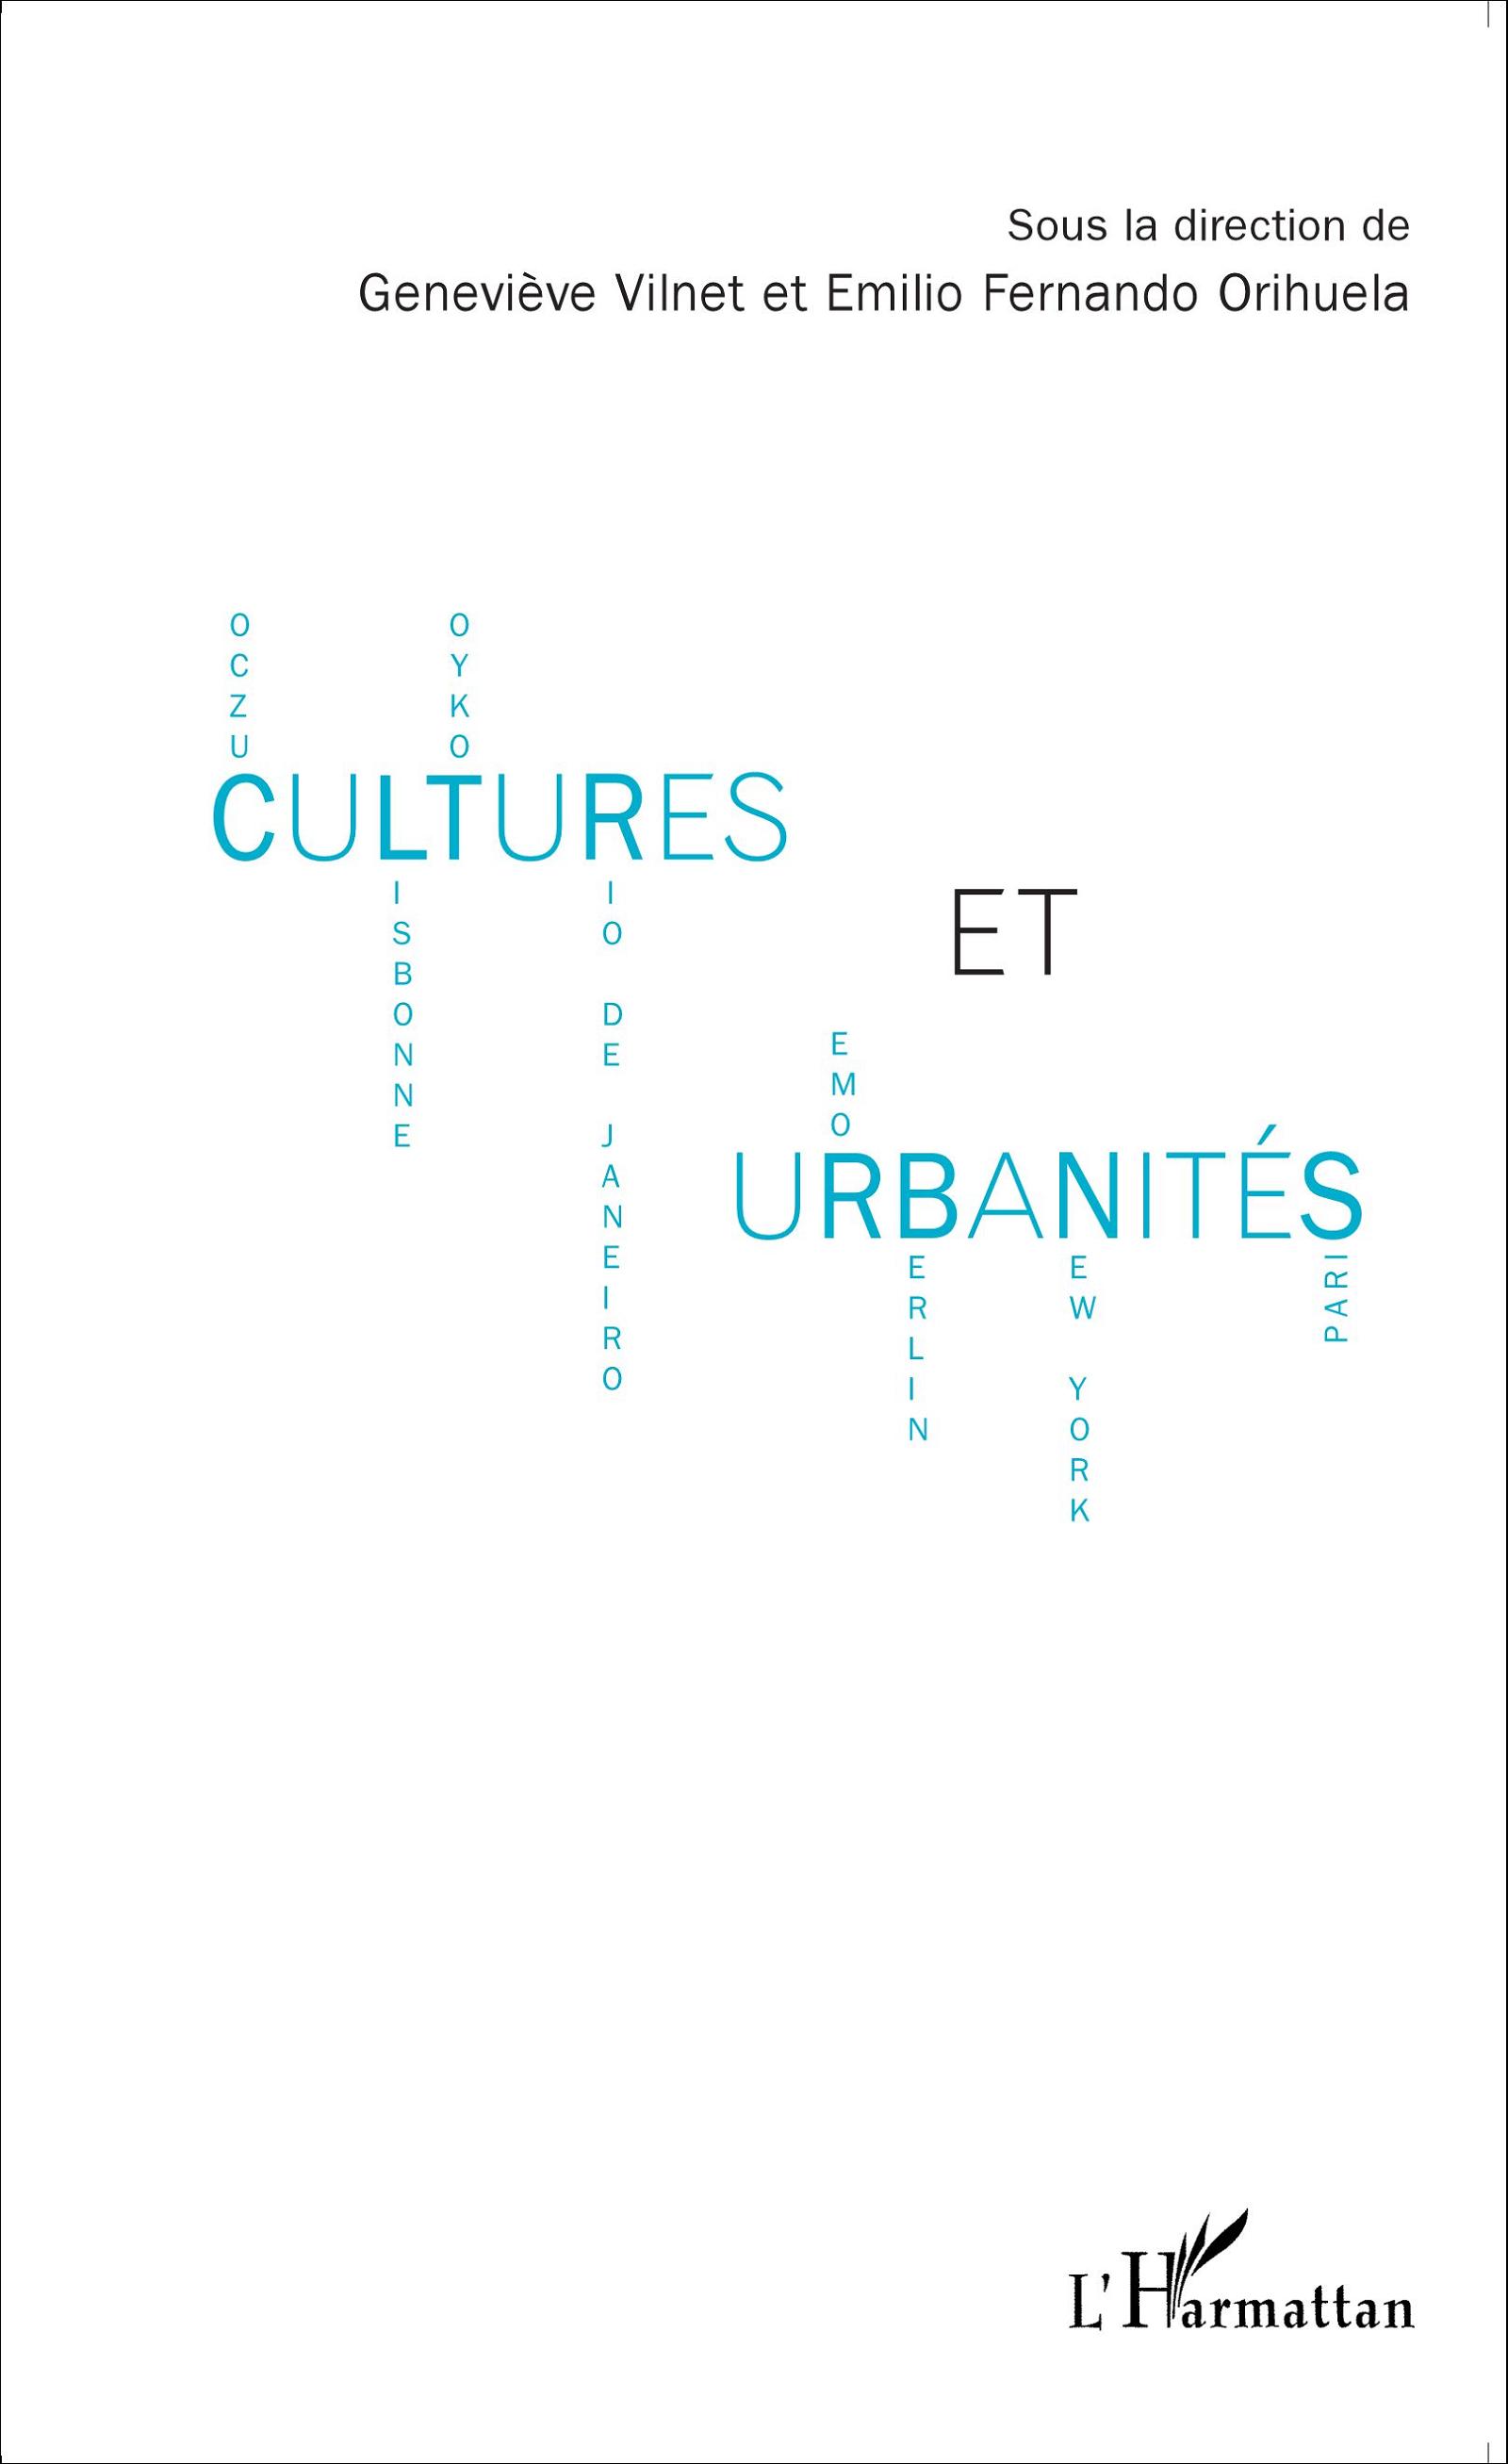 Cultures et urbanités